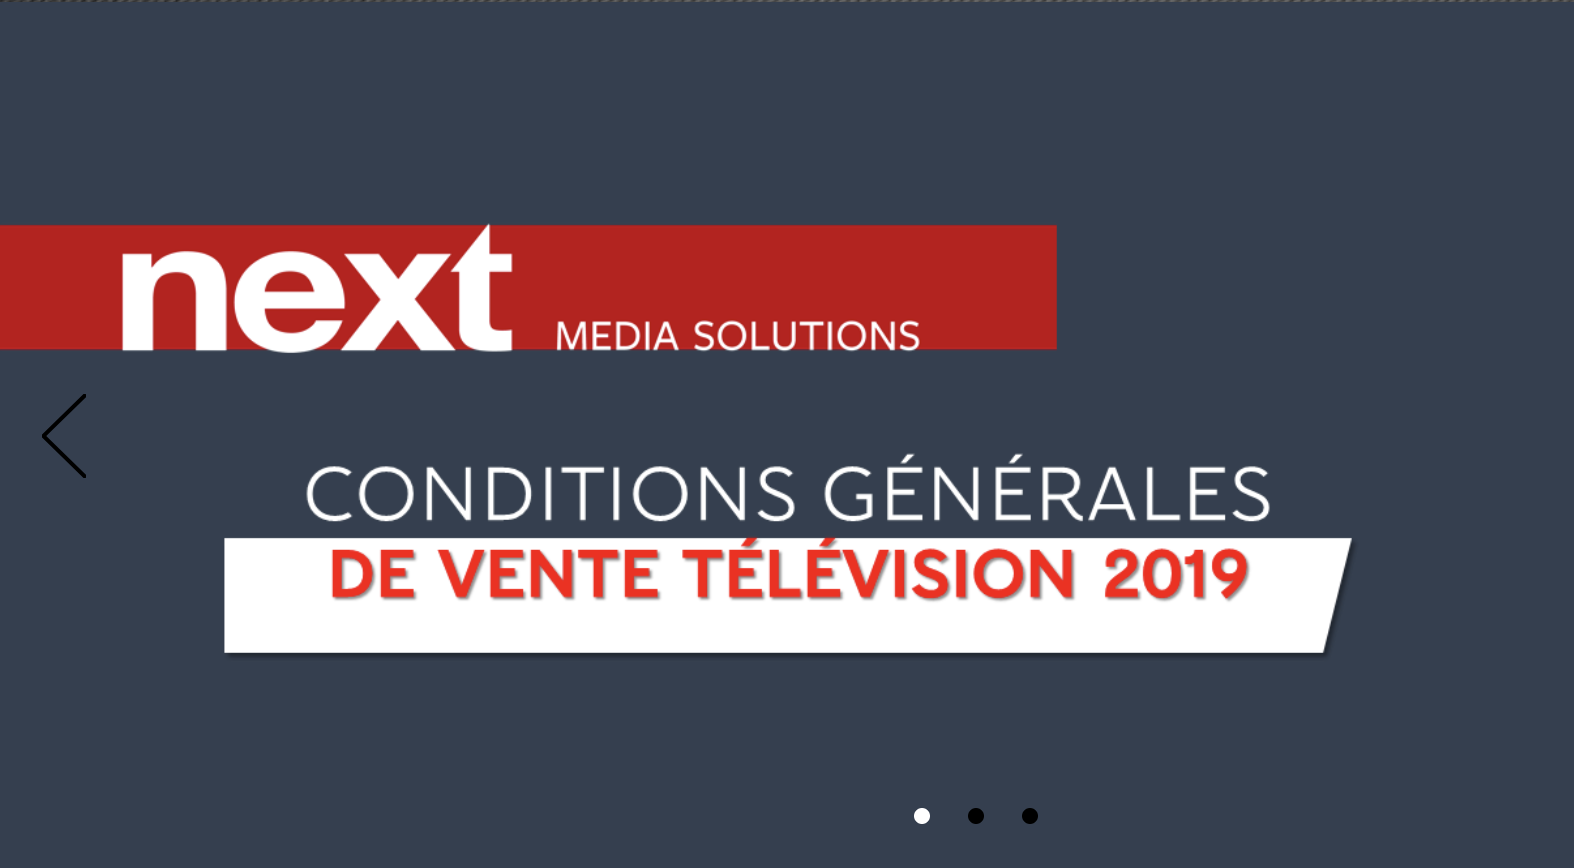 NextRégie devient Next Media Solutions.